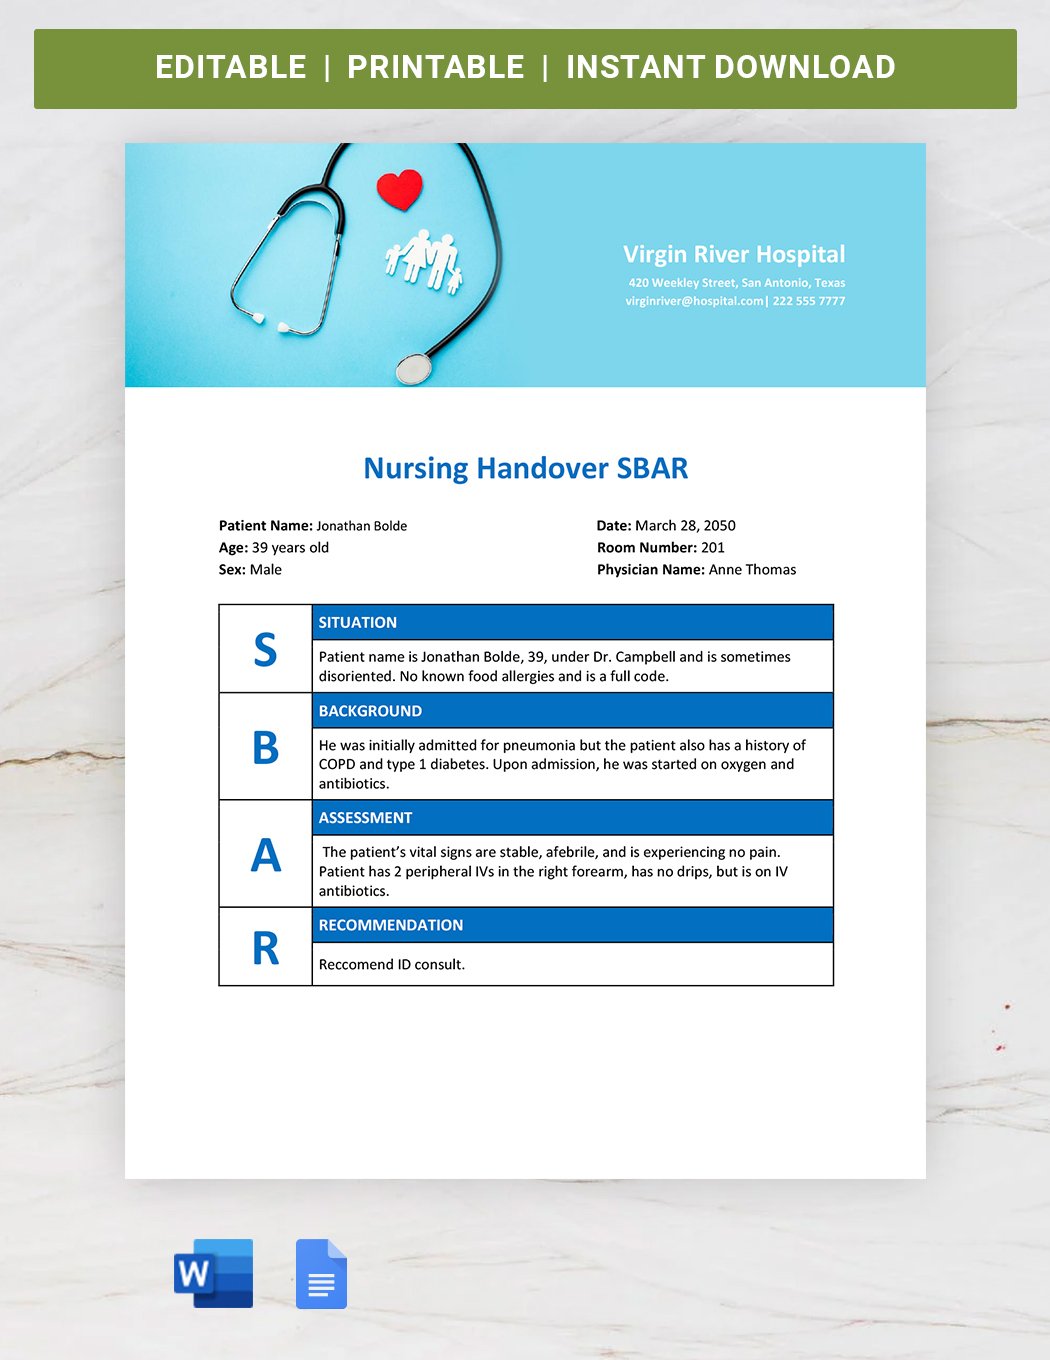 Nursing Handover SBAR Template